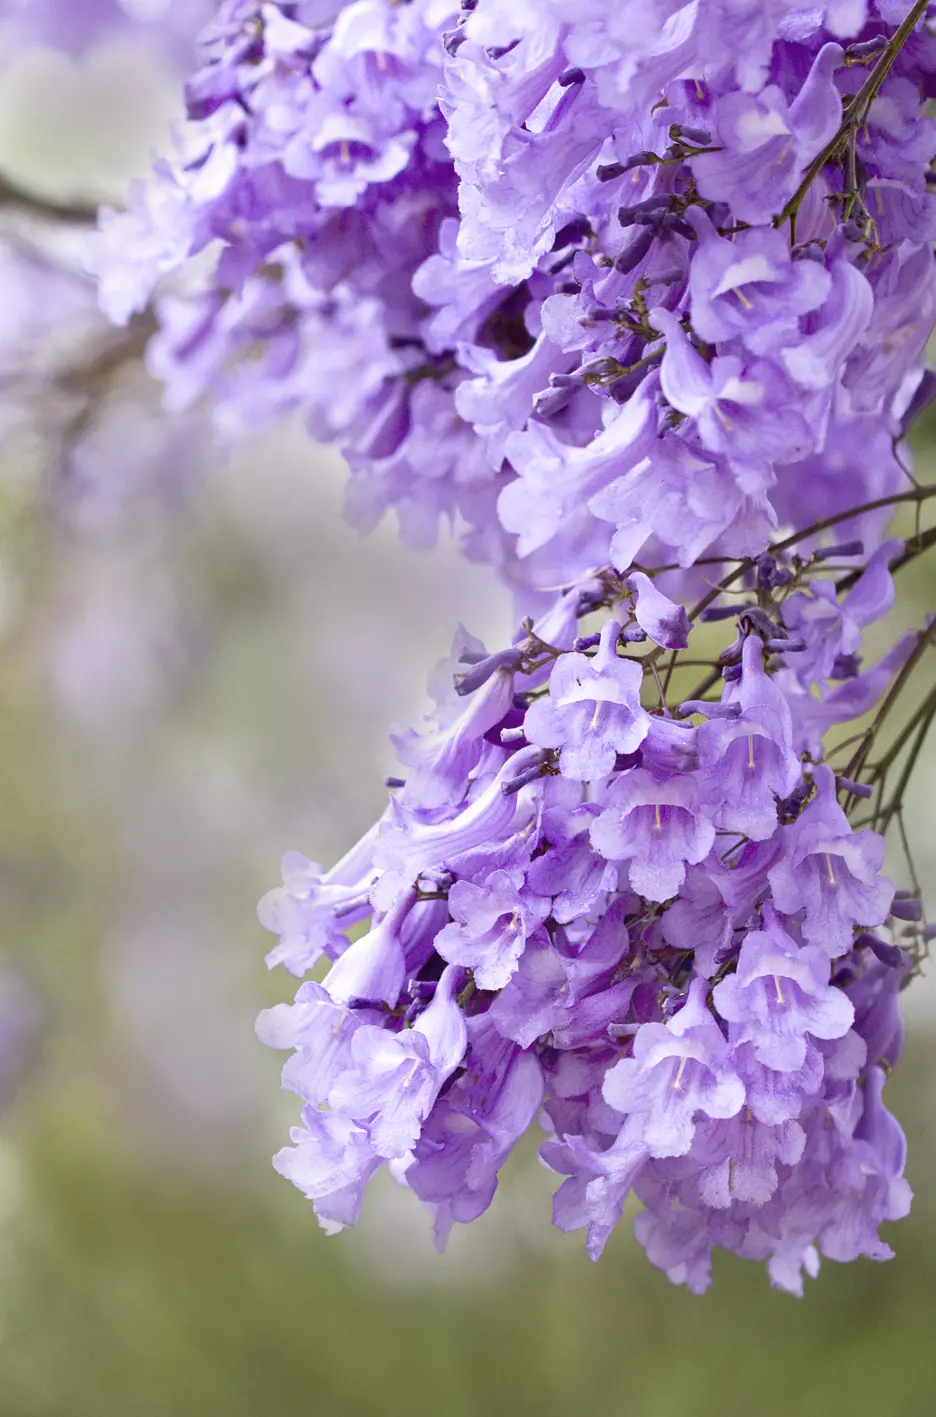 alberi con fiori violacei - Cosa vuol dire Jacaranda